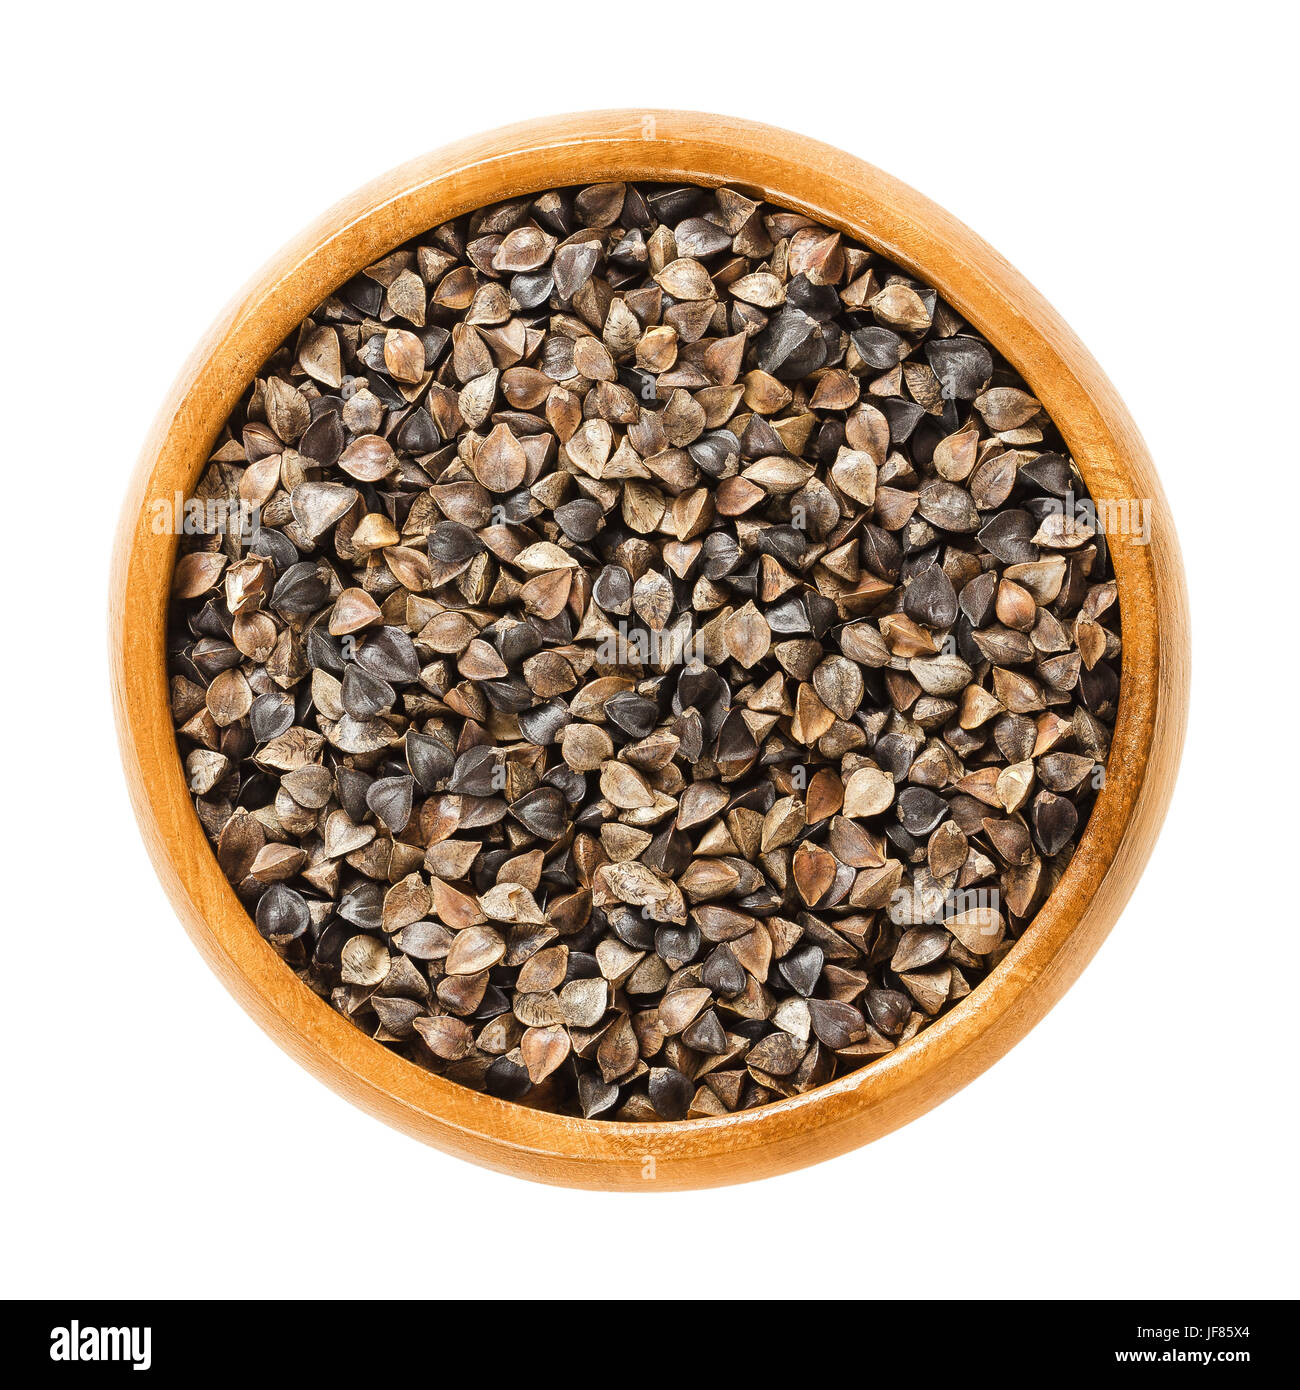 Gemeinsamen Buchweizen Samen mit Rümpfe in Holzschale. Fagopyrum Esculentum, auch Japanisch oder Silverhull Buchweizen. Gluten freie Pseudocereal. Getrockneten Samen. Stockfoto